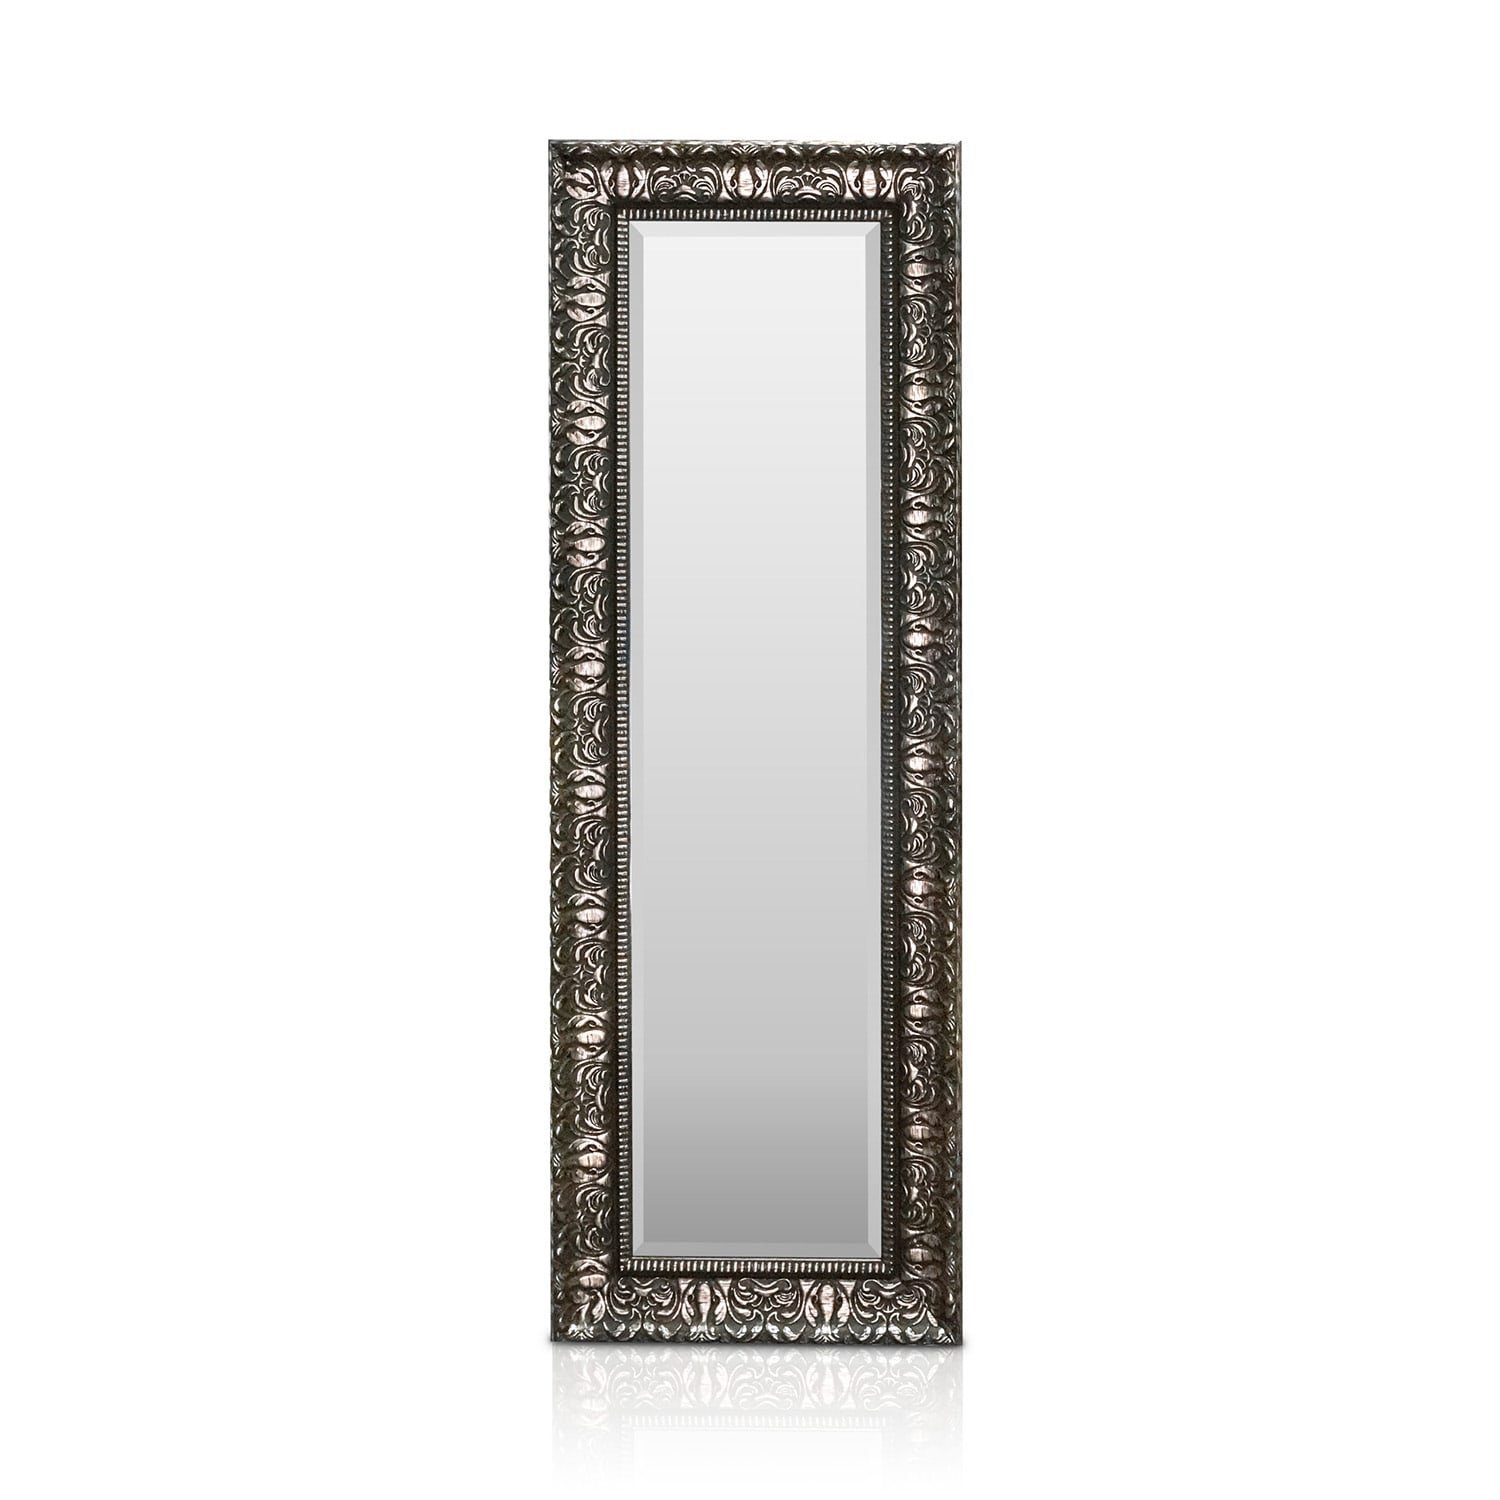 Casa Chic Spiegel Chelsea Spiegel Holzrahmen 130 x 45 cm Silber | Silber | Spiegel